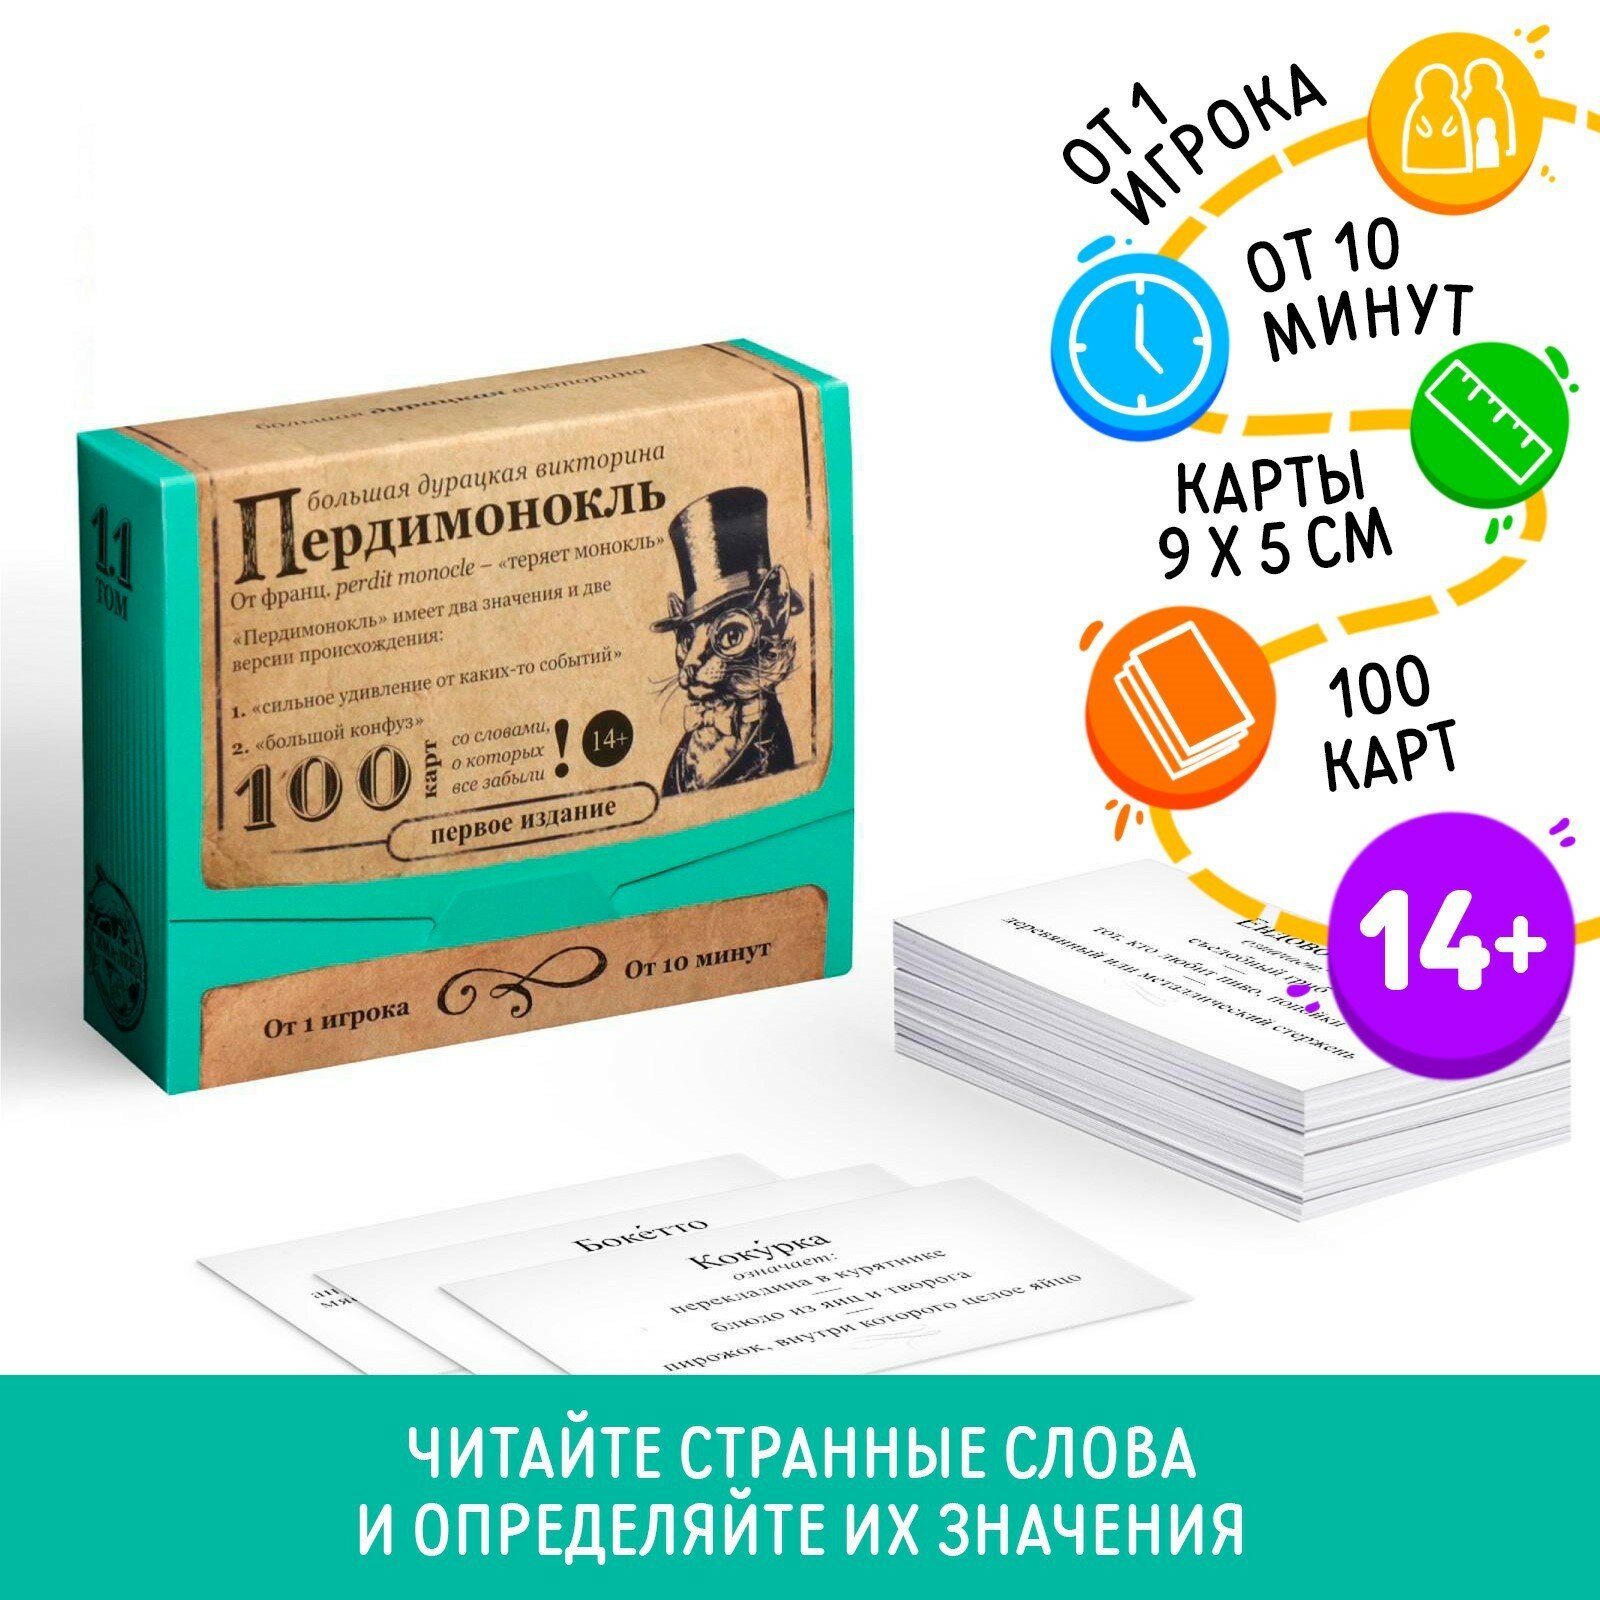 Большая дурацкая викторина "Пердимонокль", 100 карт